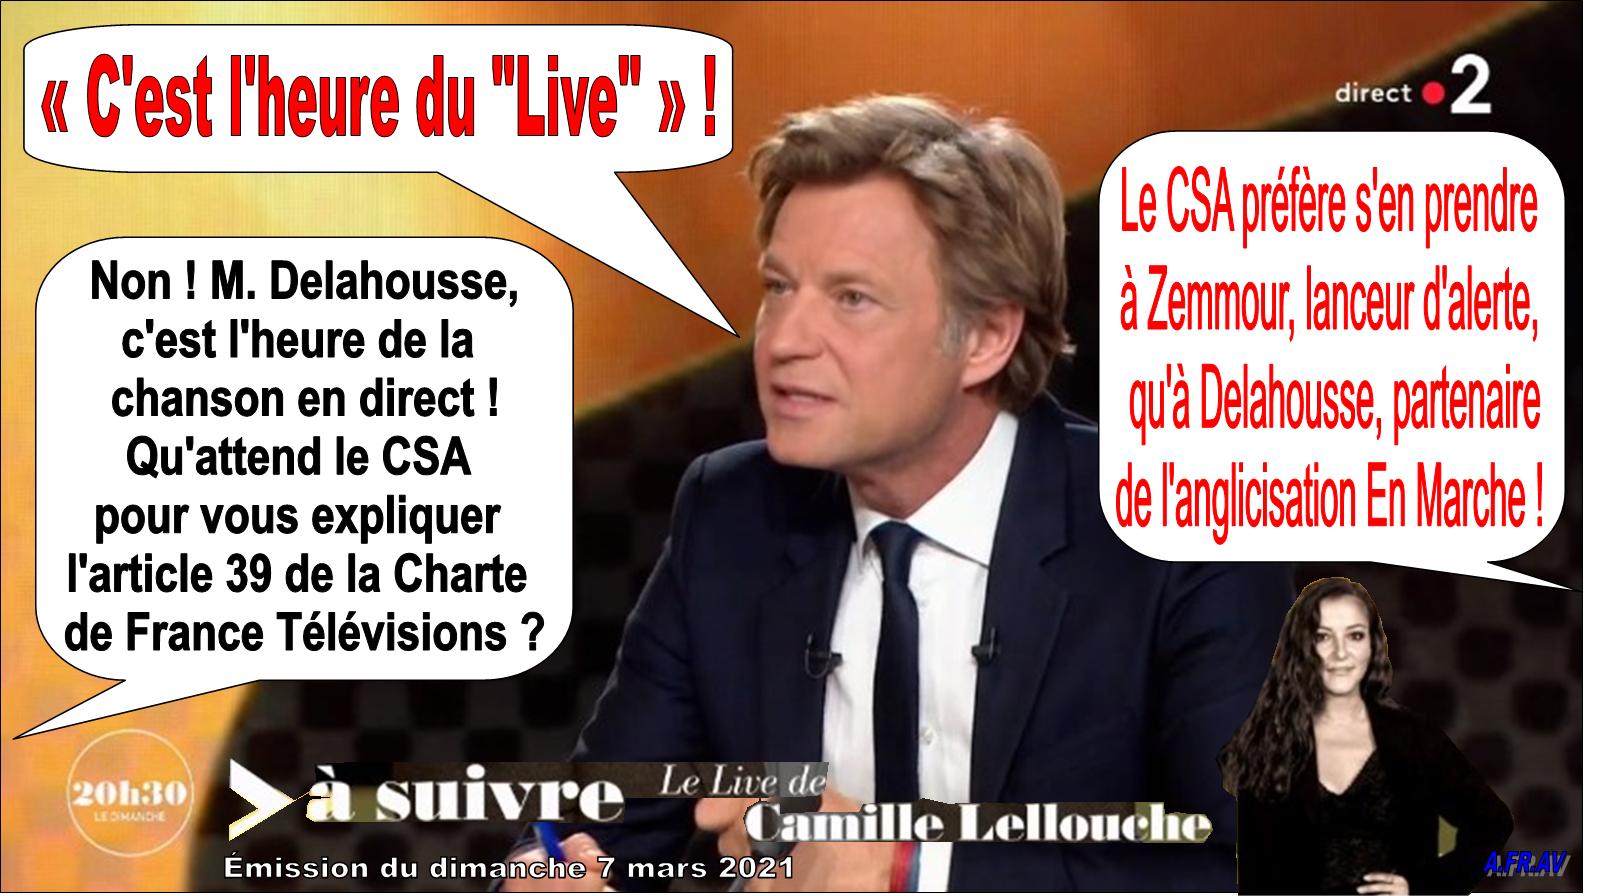 Laurent Delahousse, C'est l'heure du LIVE, 20h30 le dimanche